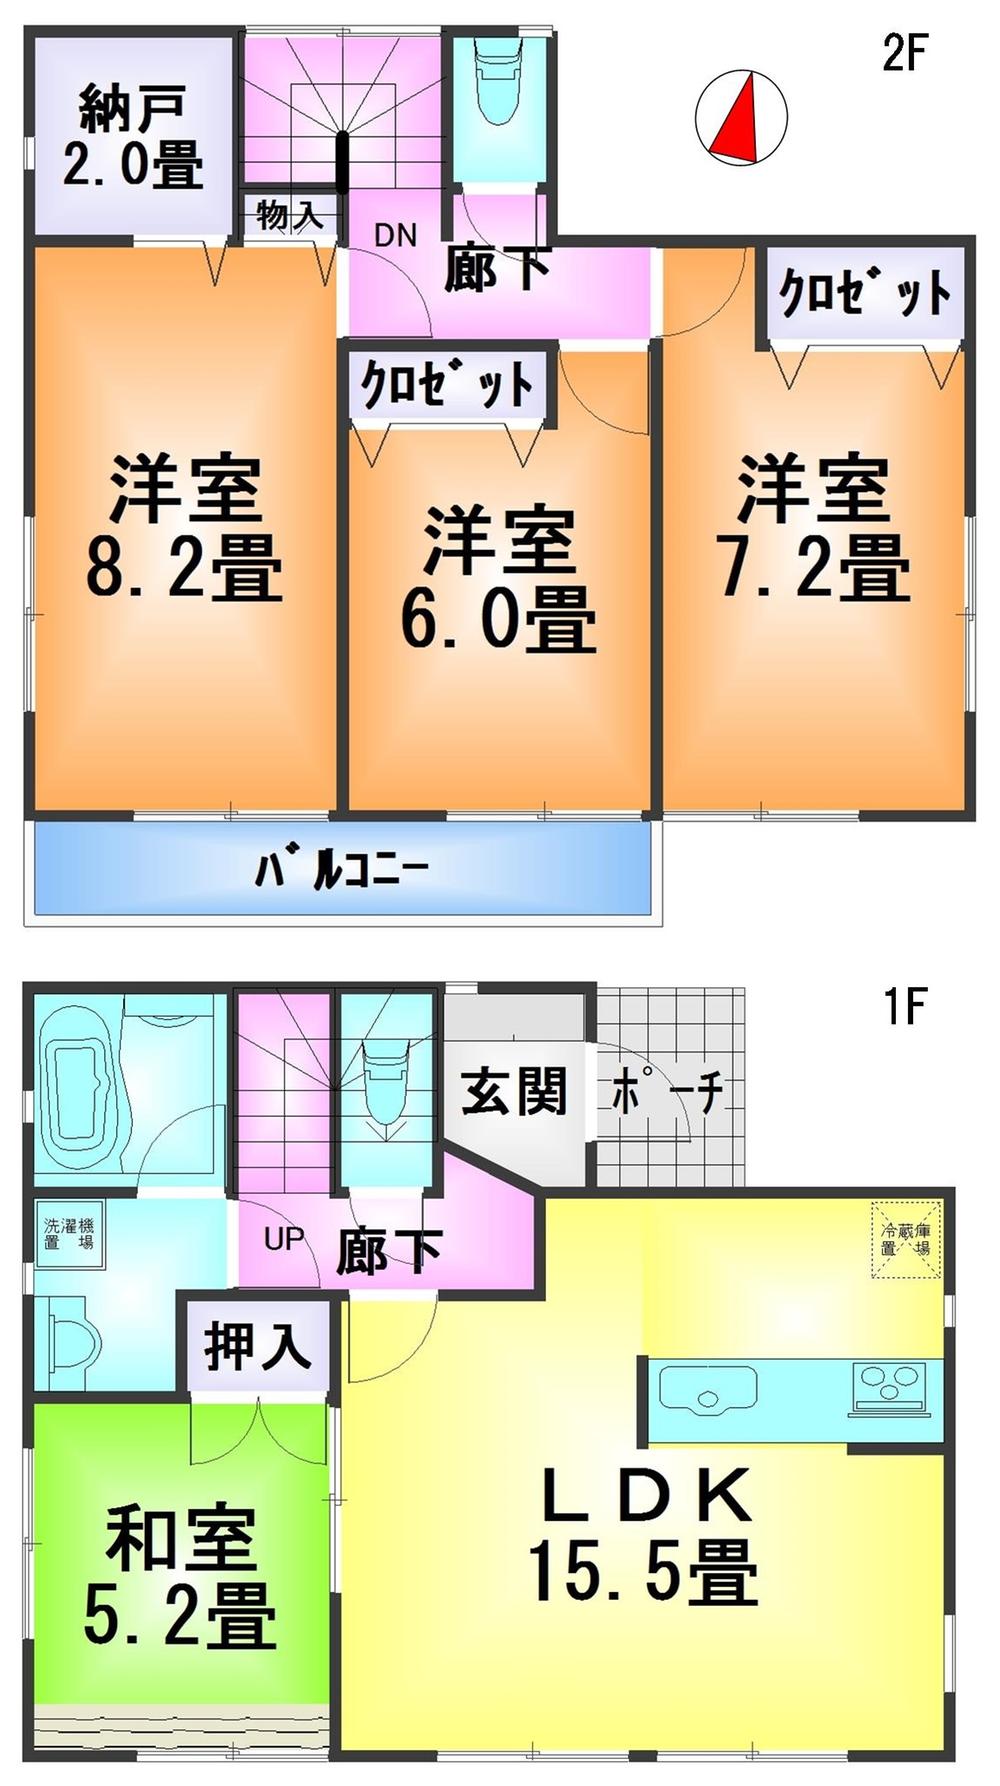 Floor plan. 20,900,000 yen, 4LDK + S (storeroom), Land area 245.19 sq m , Building area 96.79 sq m